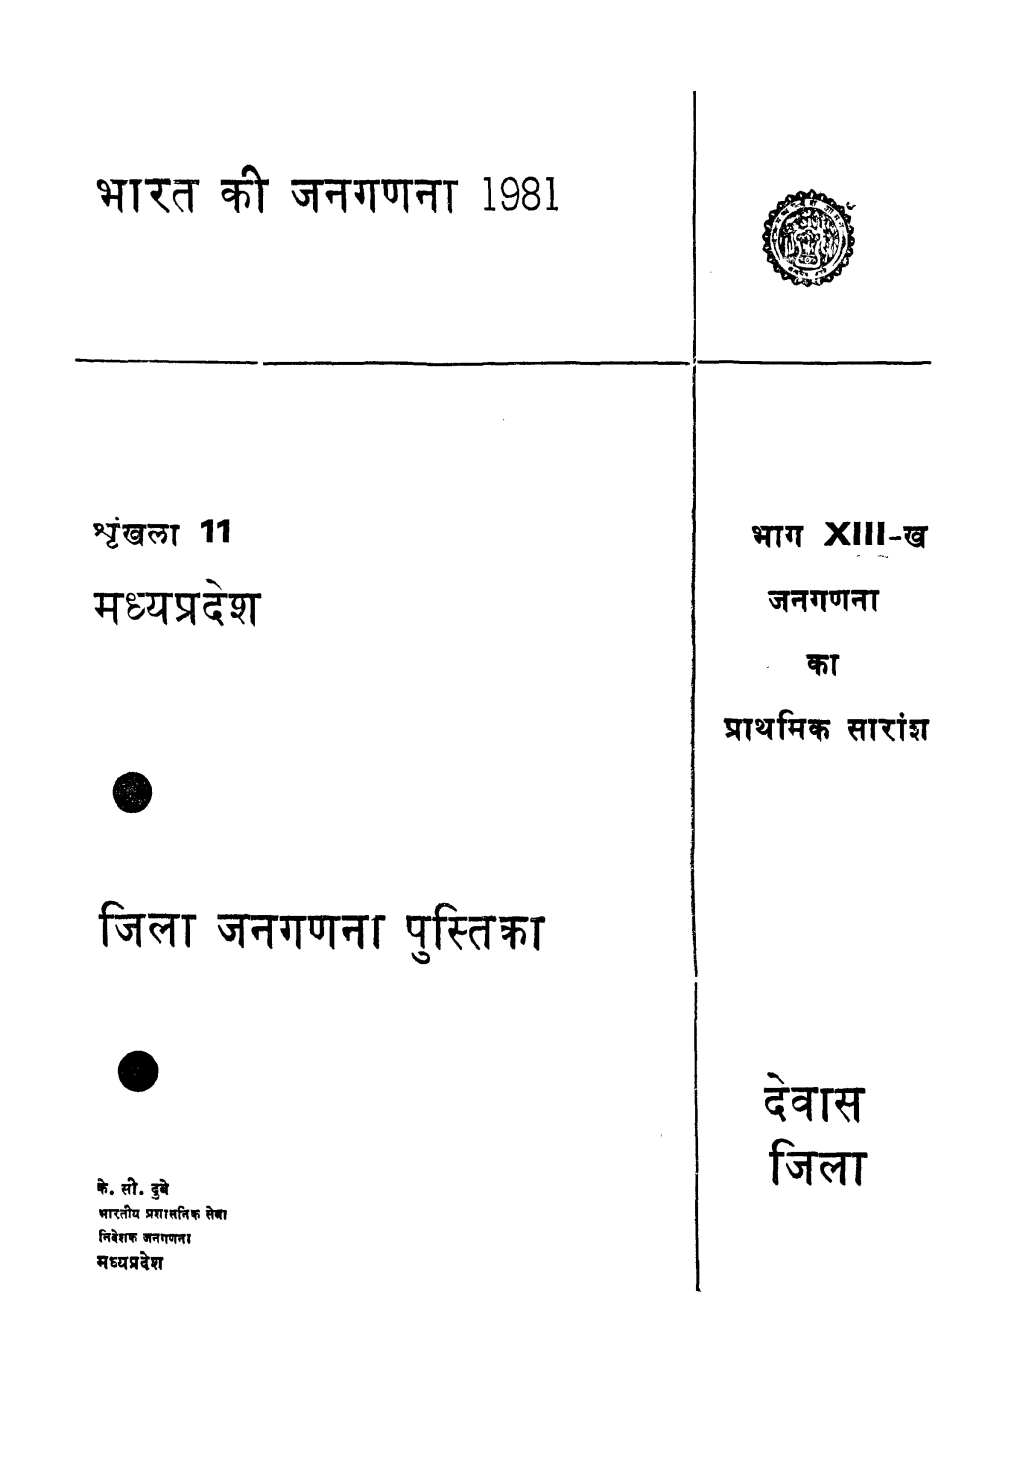 District Census Handbook, Dewas, Part XIII-B, Series-11